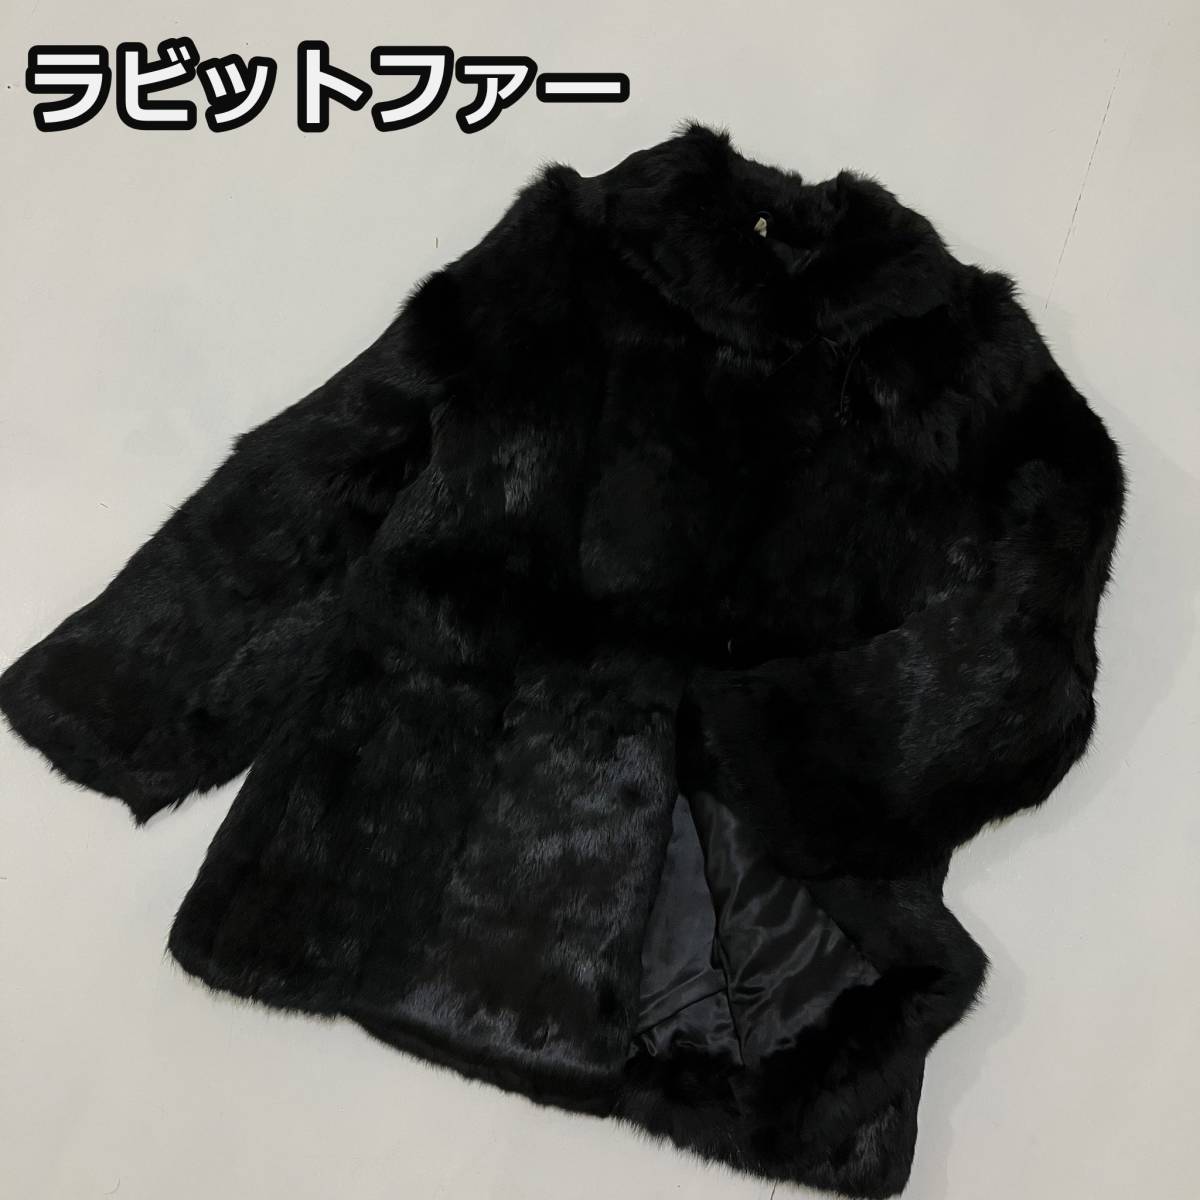 【ラビットファー】本毛皮 ショールカラー ジャケット フレンチラビット リアルファー 襟紐付き 黒 ブラック